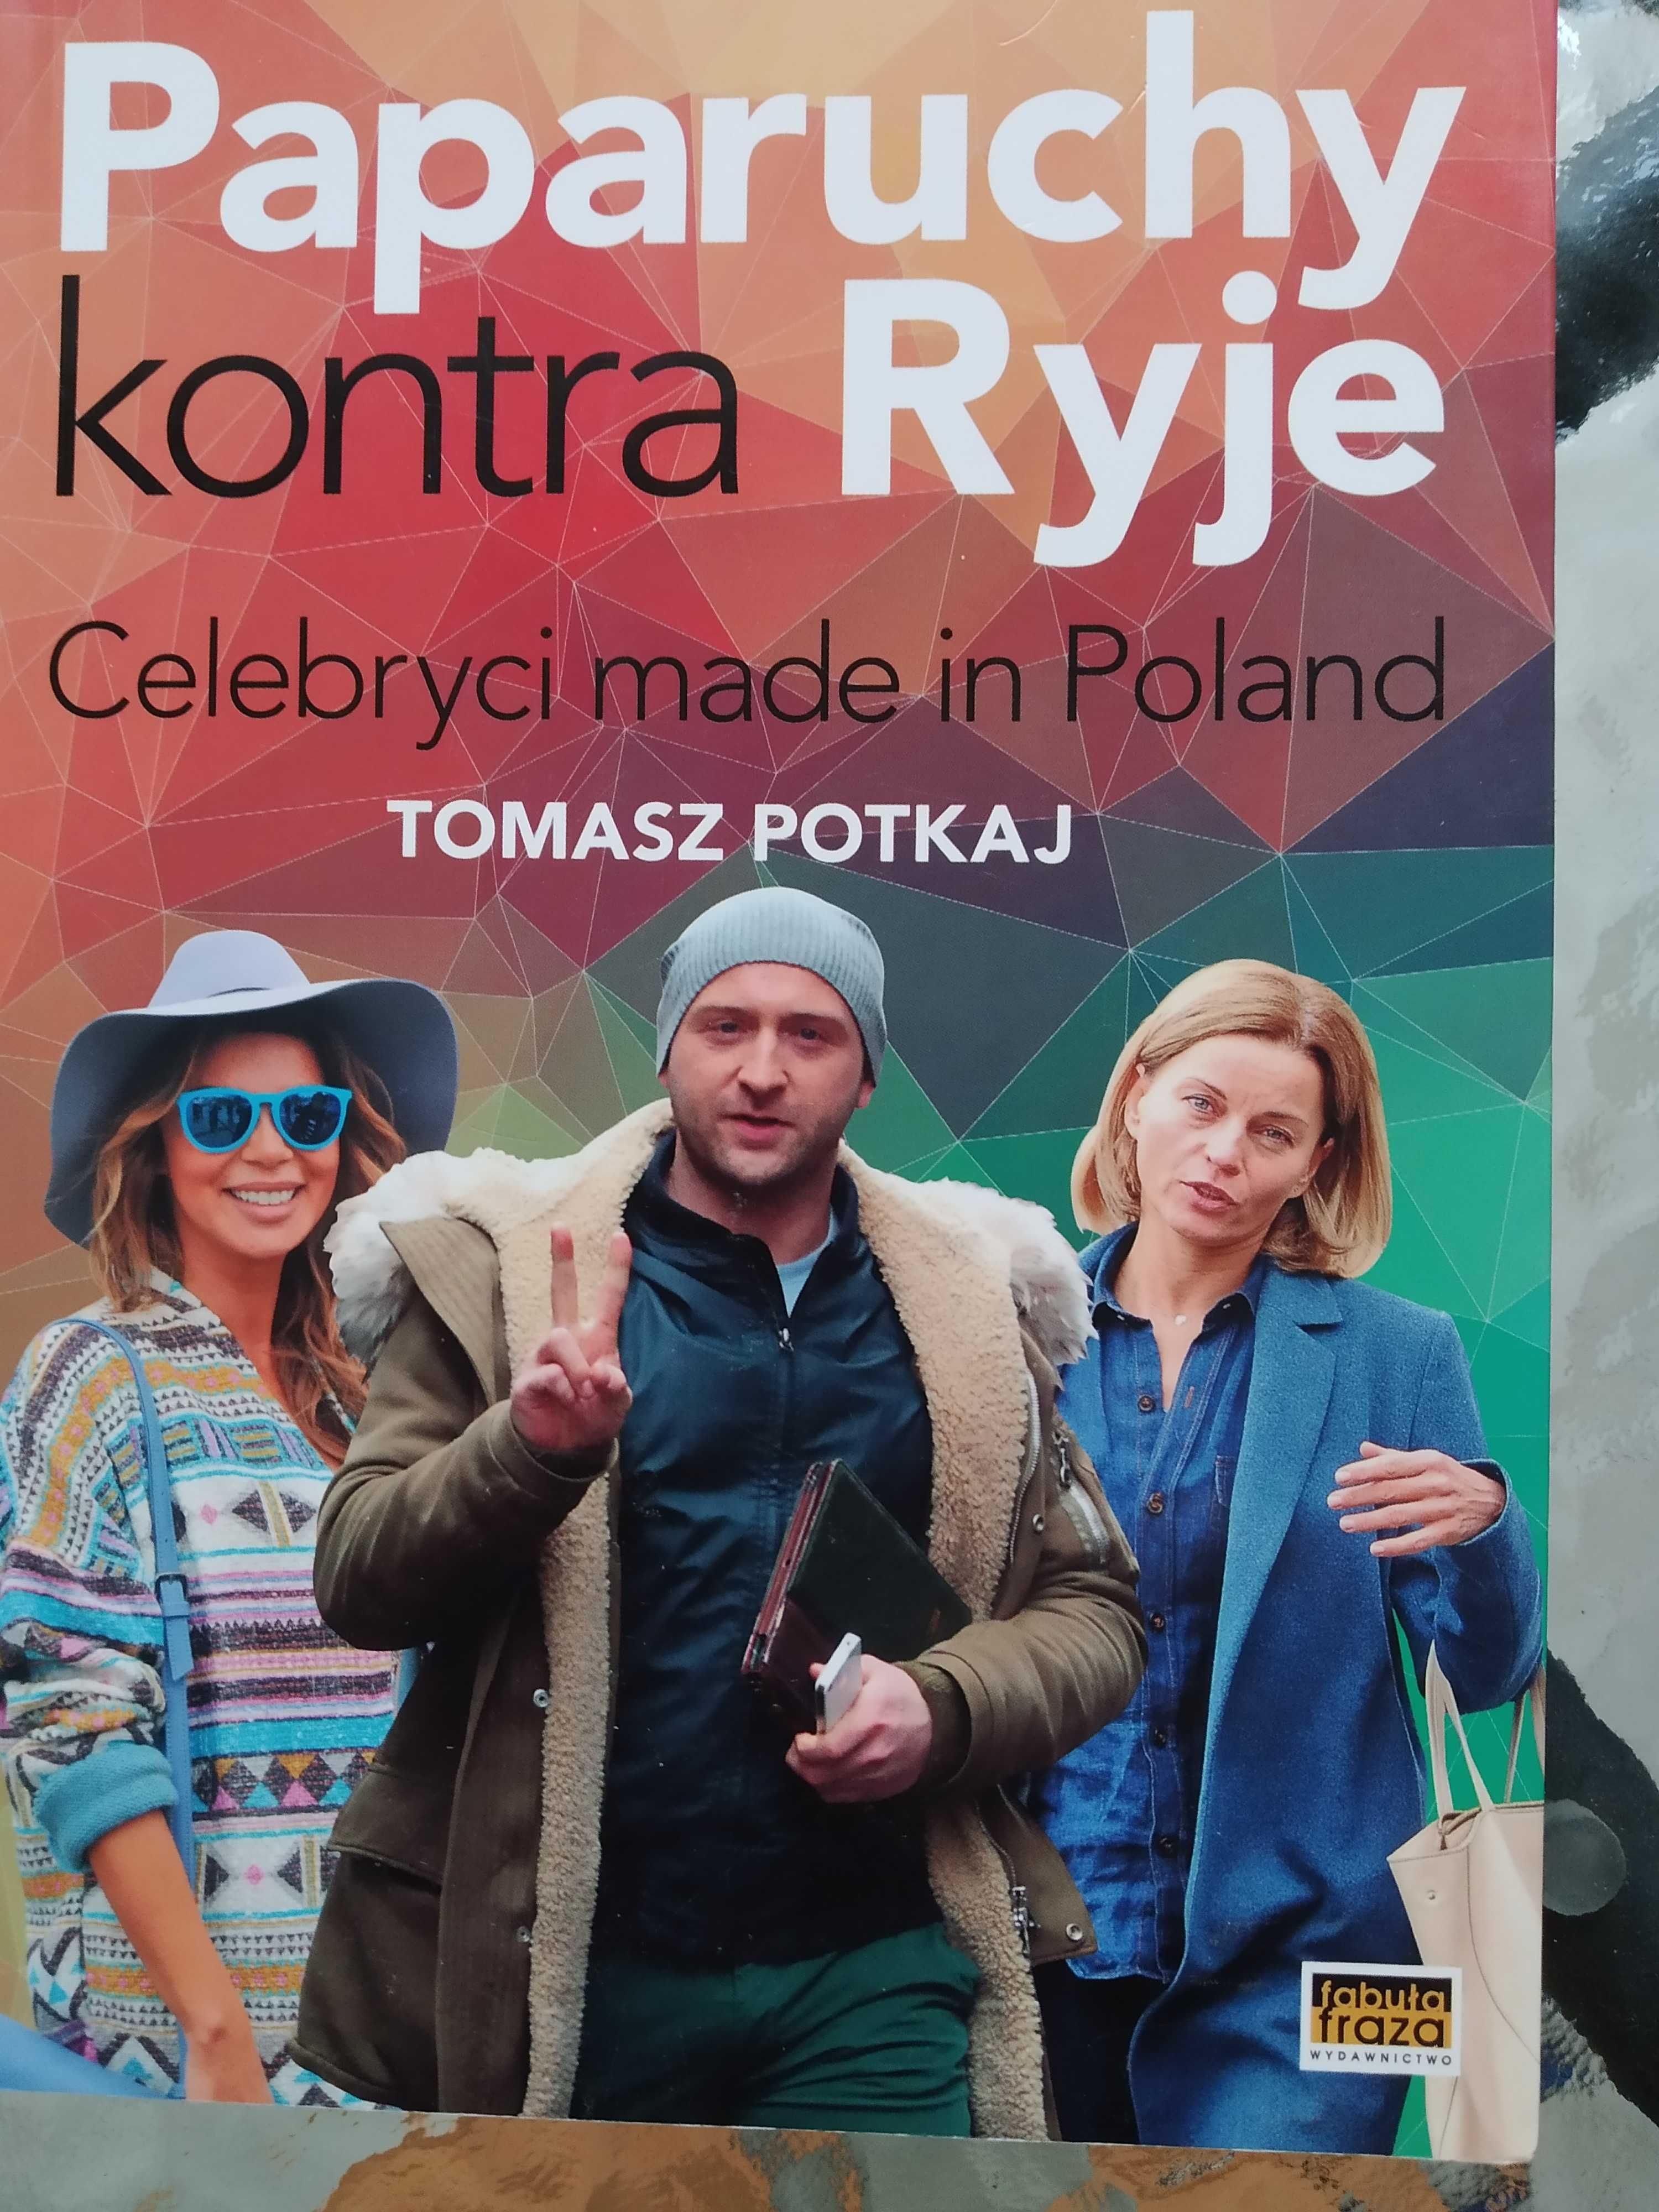 Paparuchy kontra ryje  Celebryci made in Poland  NOWA